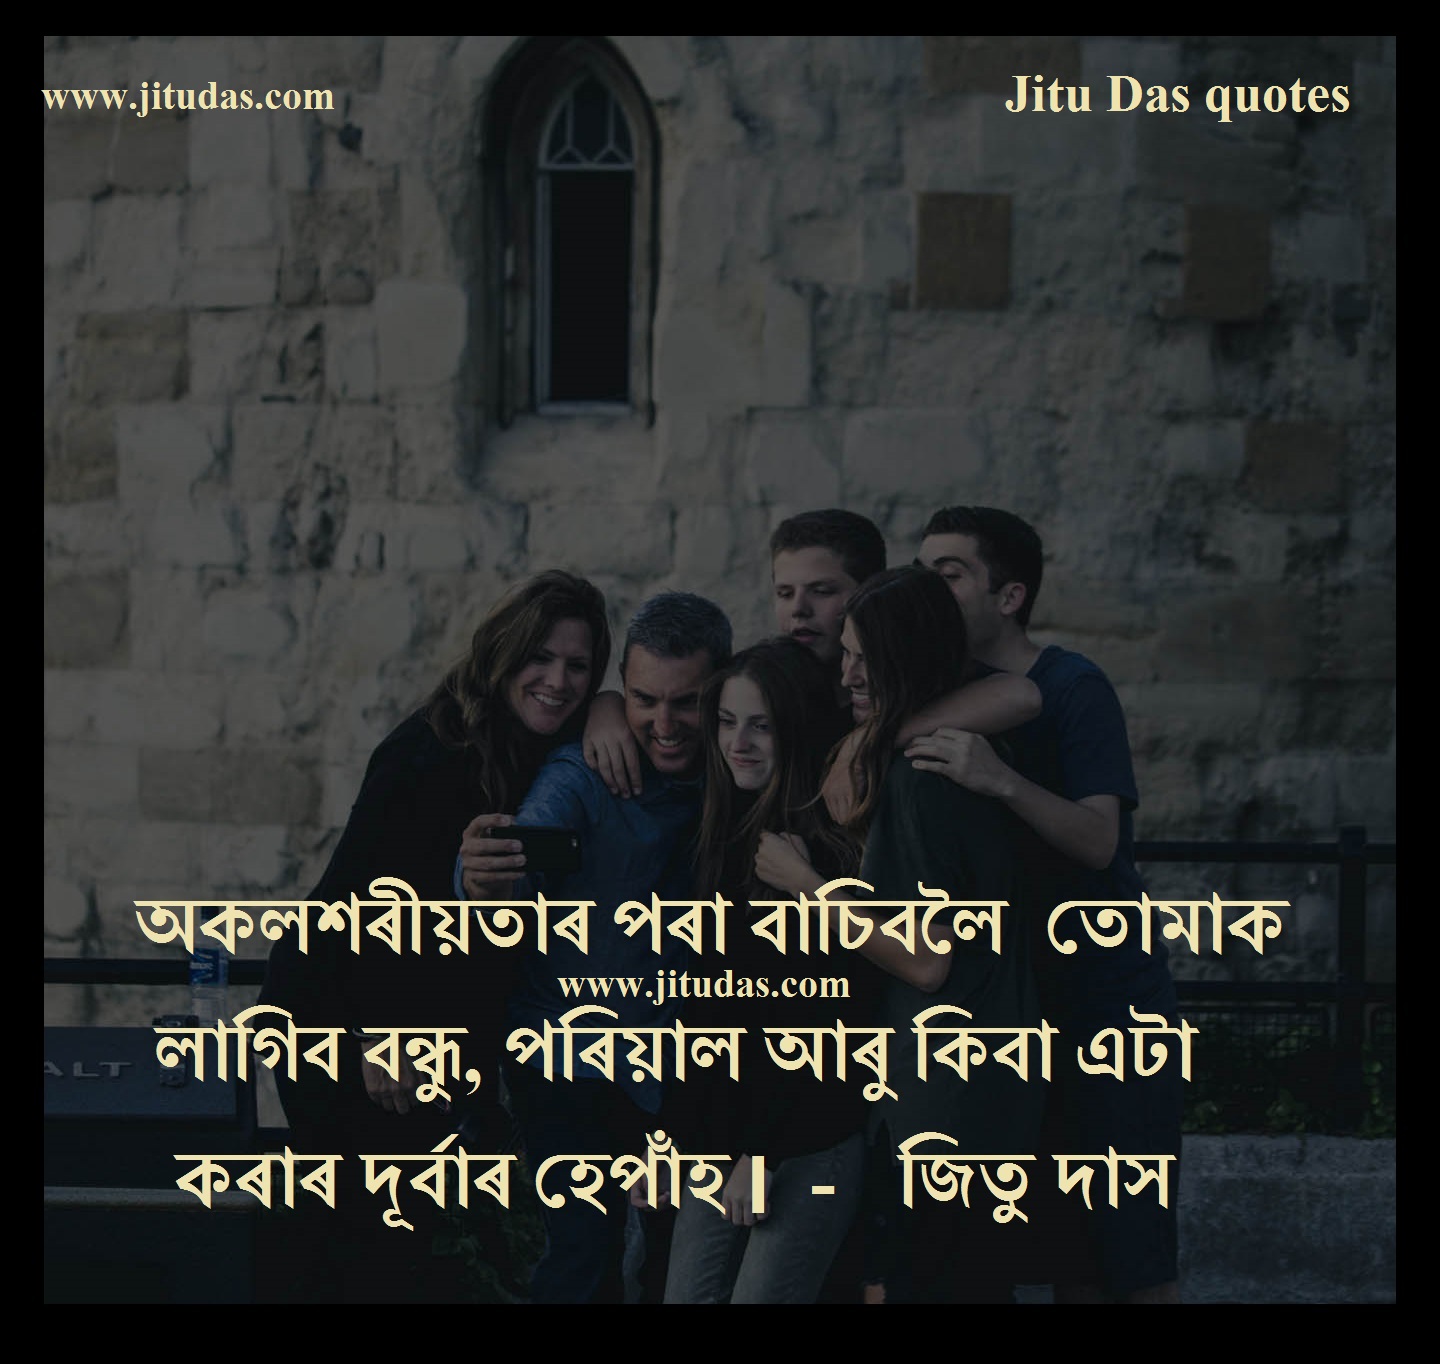 Alone status quotes in Assamese by Jitu Das à¦œà¦¿à¦¤à§ à¦¦à¦¾à¦¸ à¦¬à¦¾à¦£à§€ quotes status images